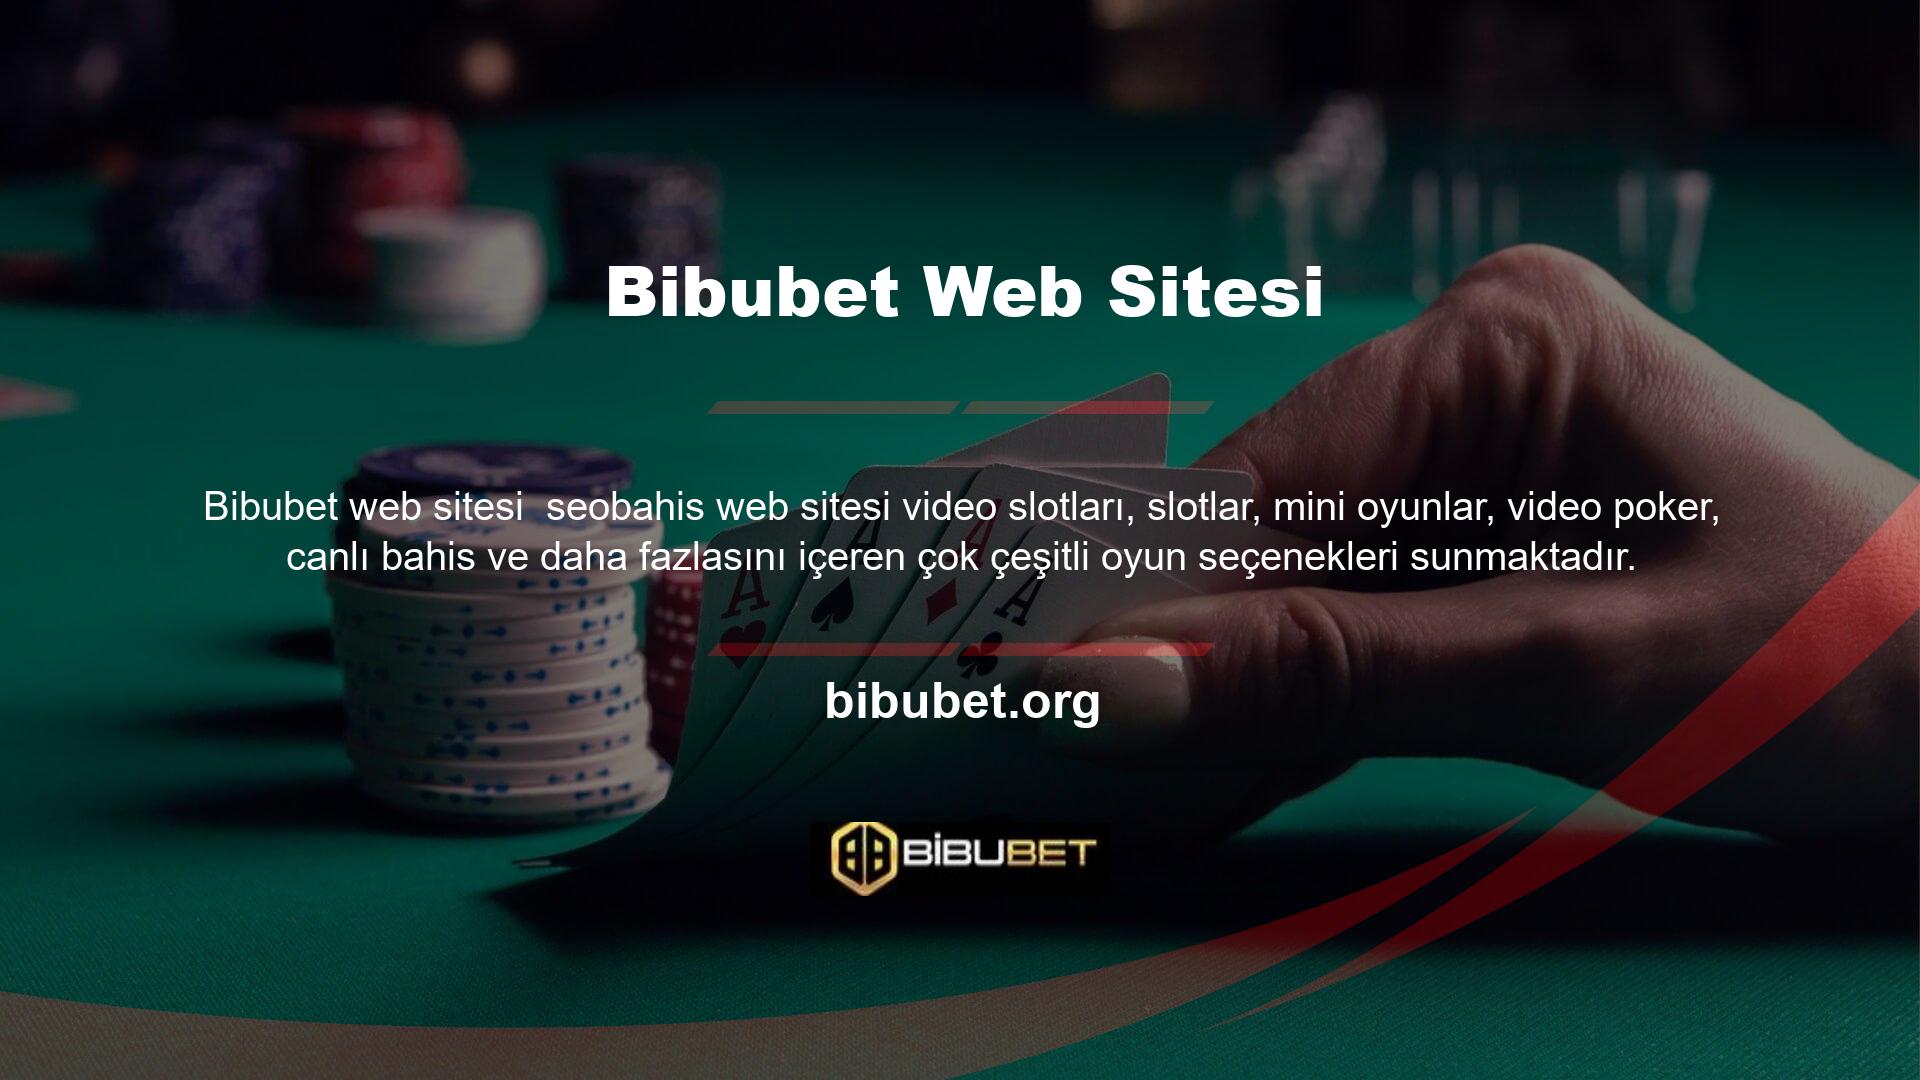 Bibubet Casino bölümü, meşruiyeti tarafsız bir otorite tarafından onaylanmış sertifikalı numara üreteçleri kullanır